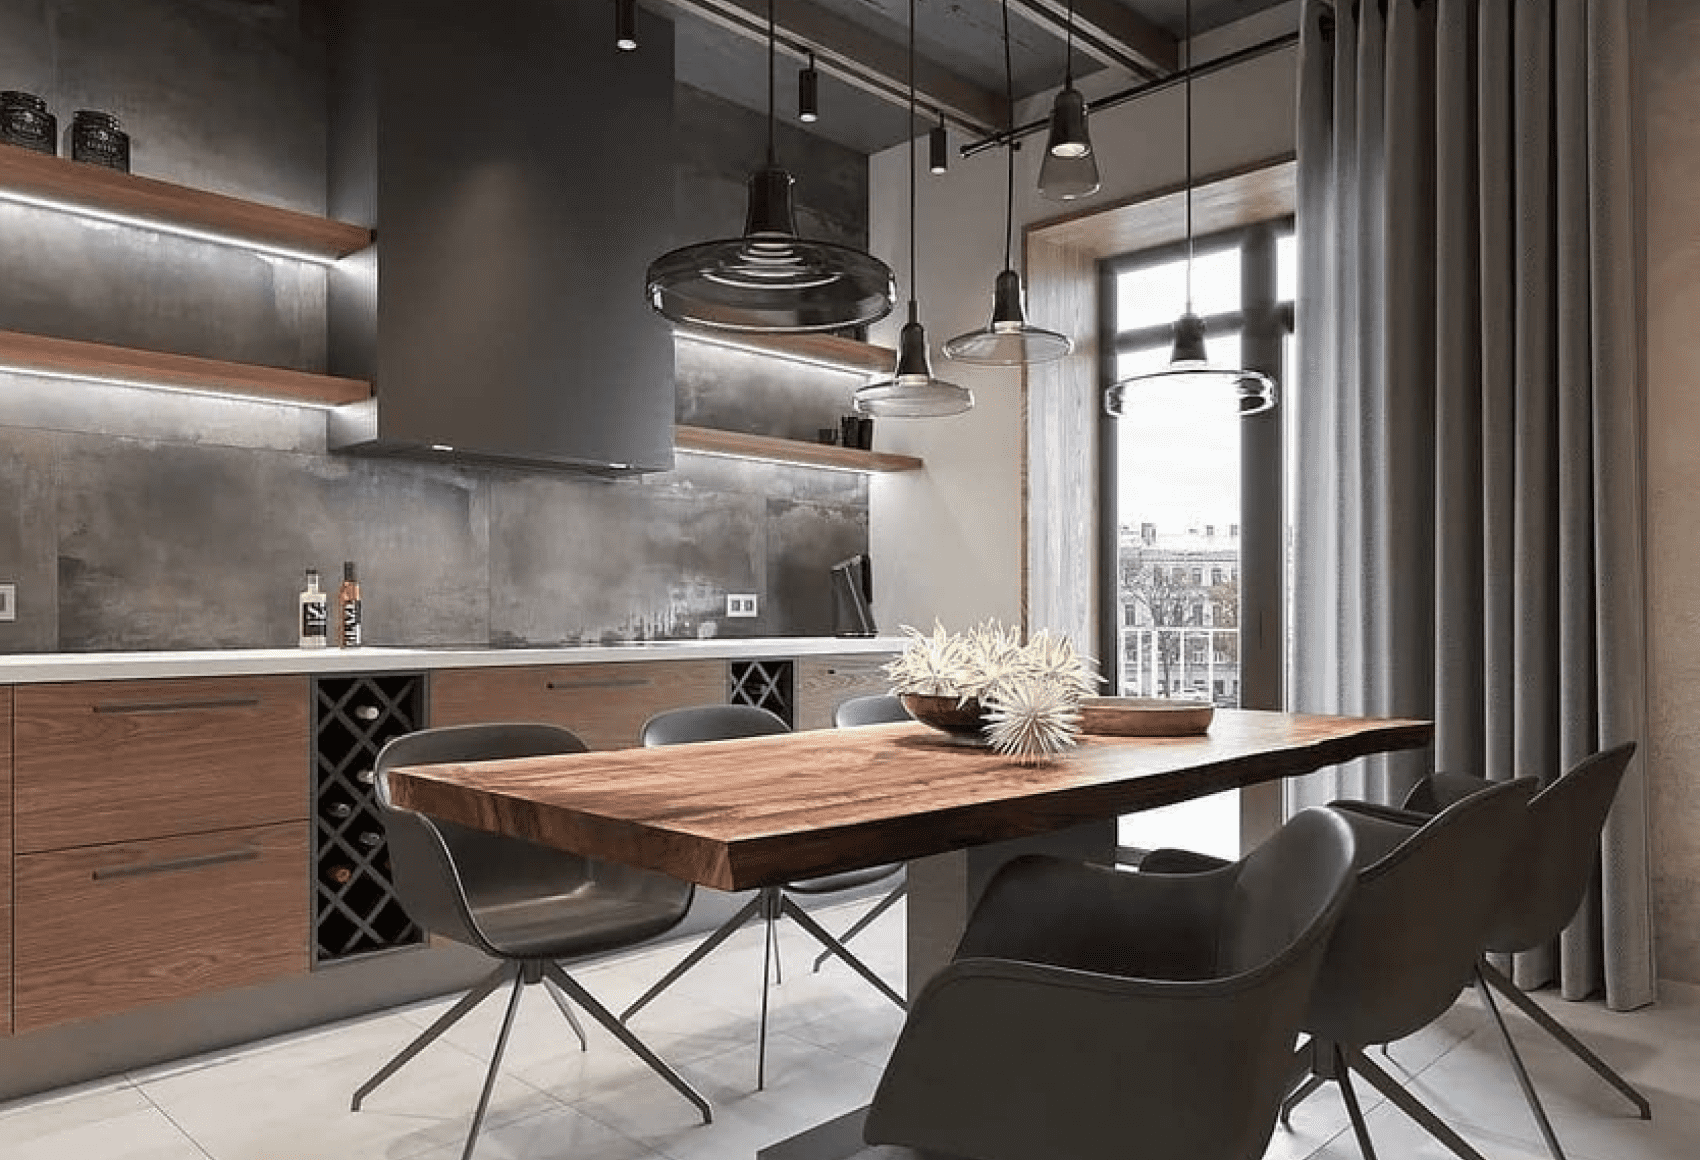 Дизайн кухни-гостиной 20 кв. м. - 30 фото примеров интерьера